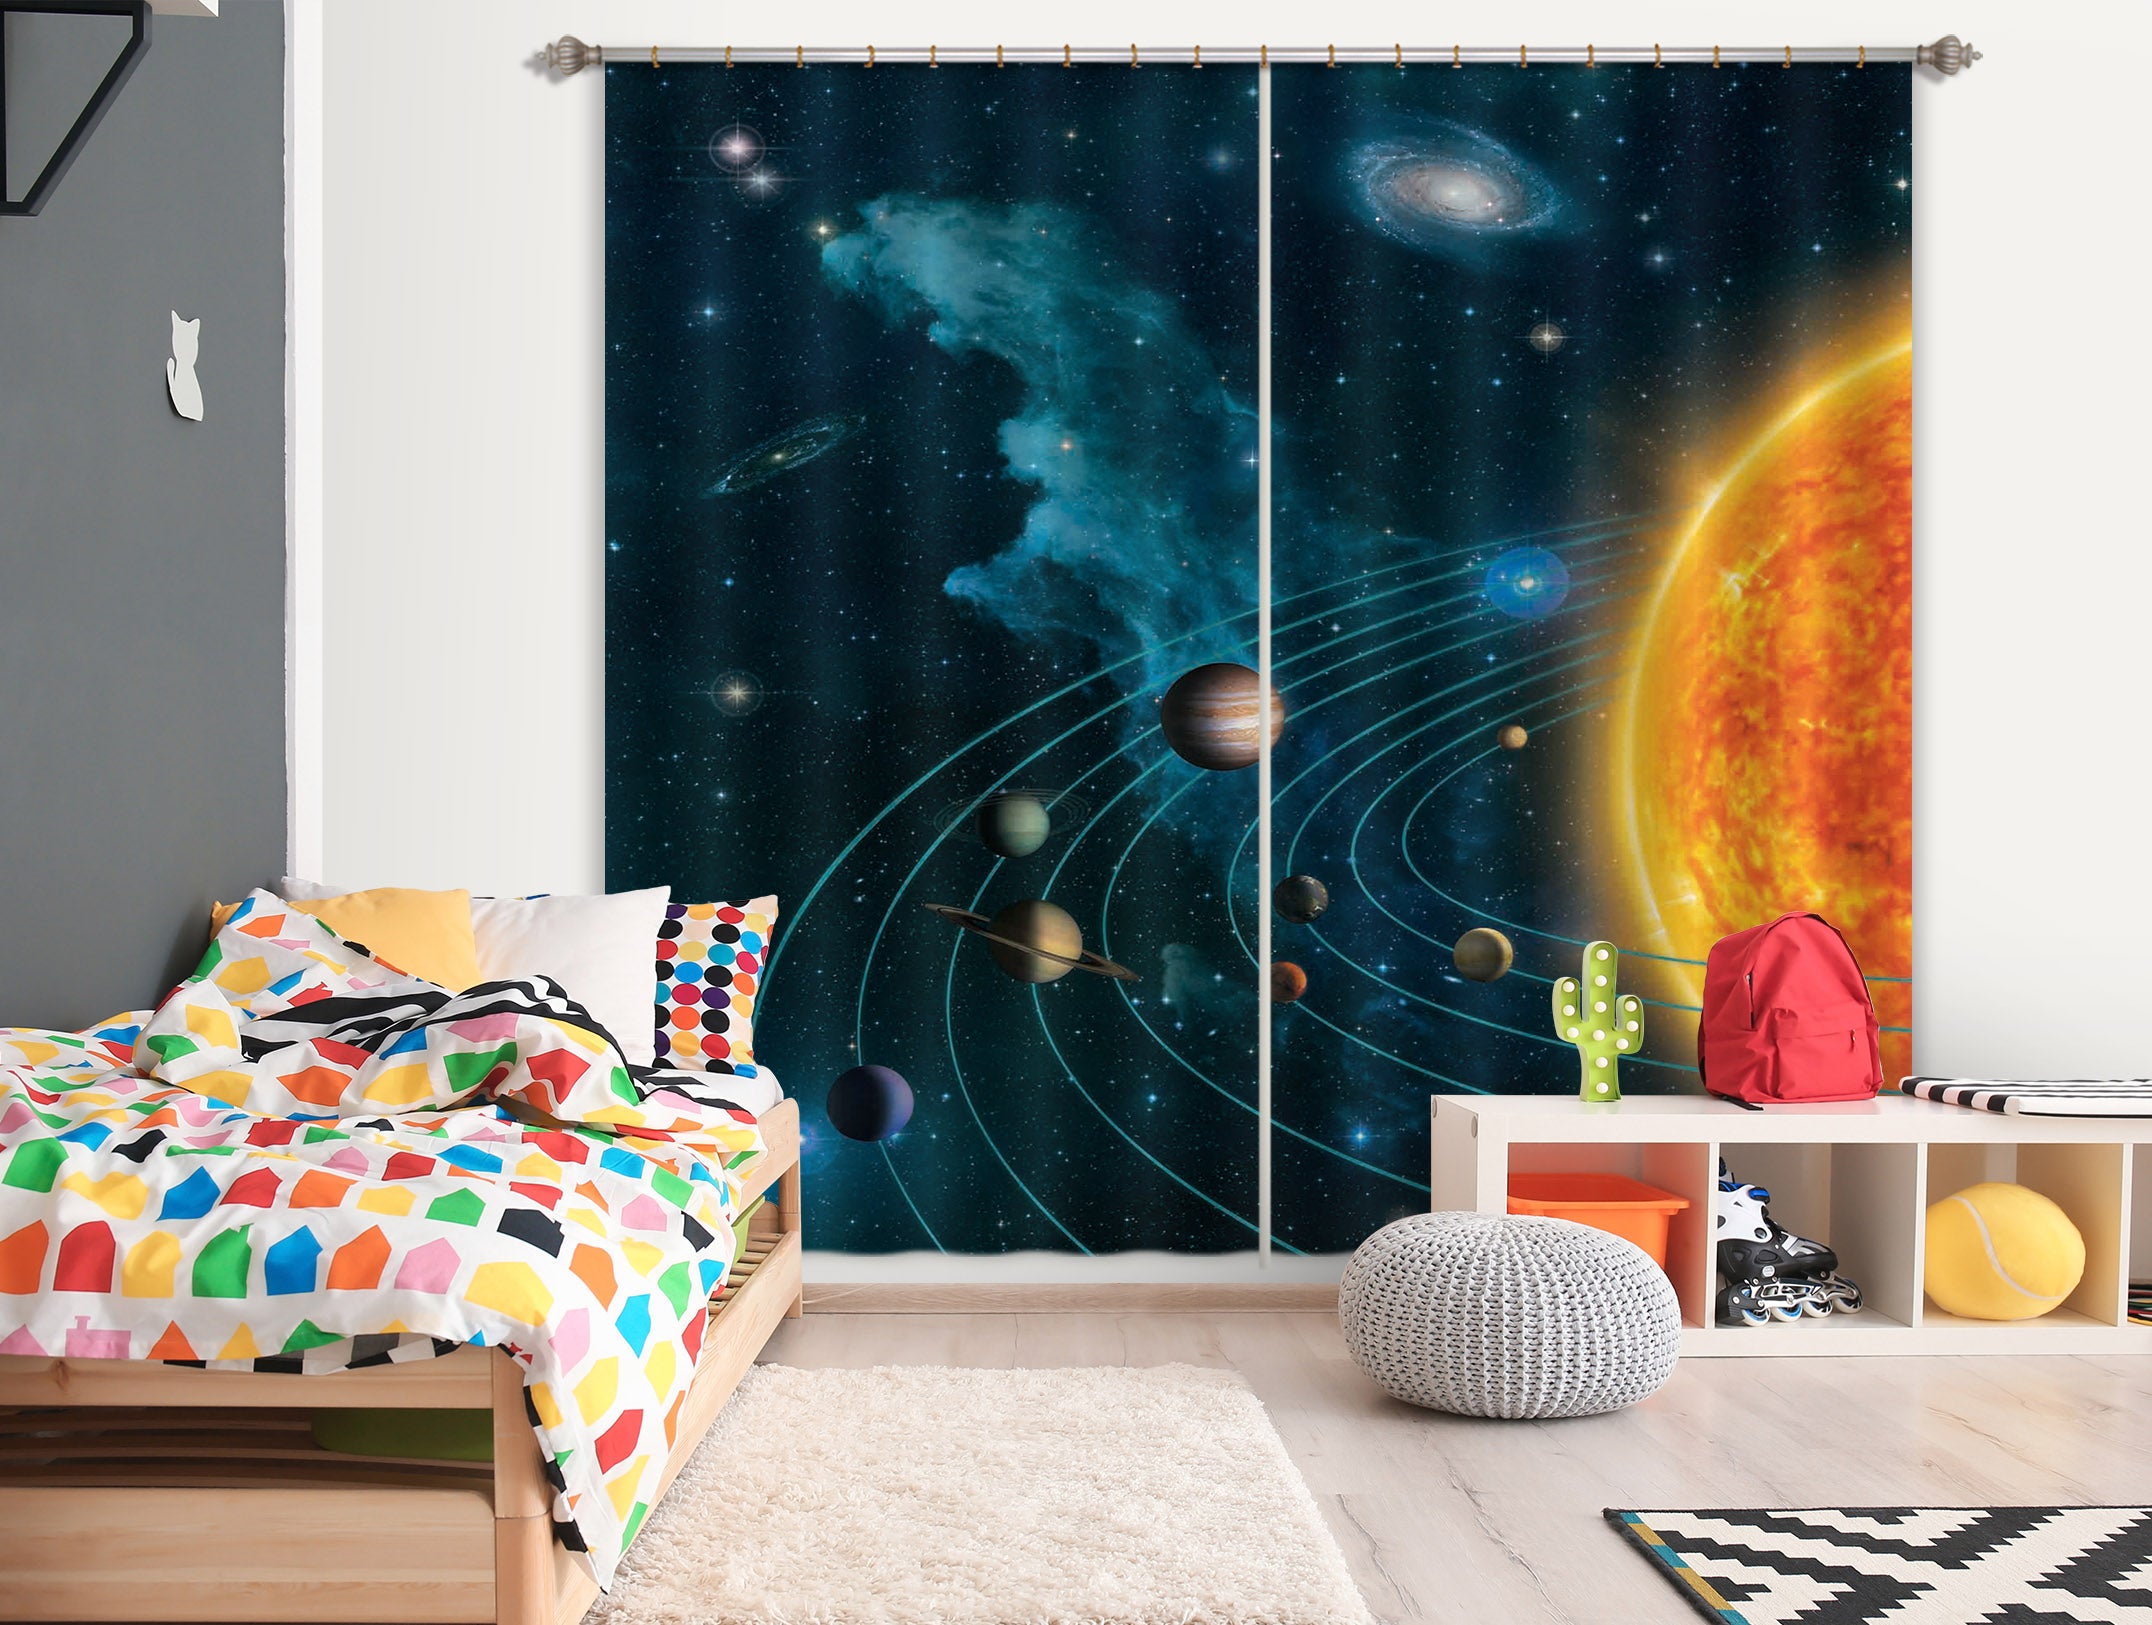 3D Solar System 074 Vincent Hie Curtain Curtains Drapes